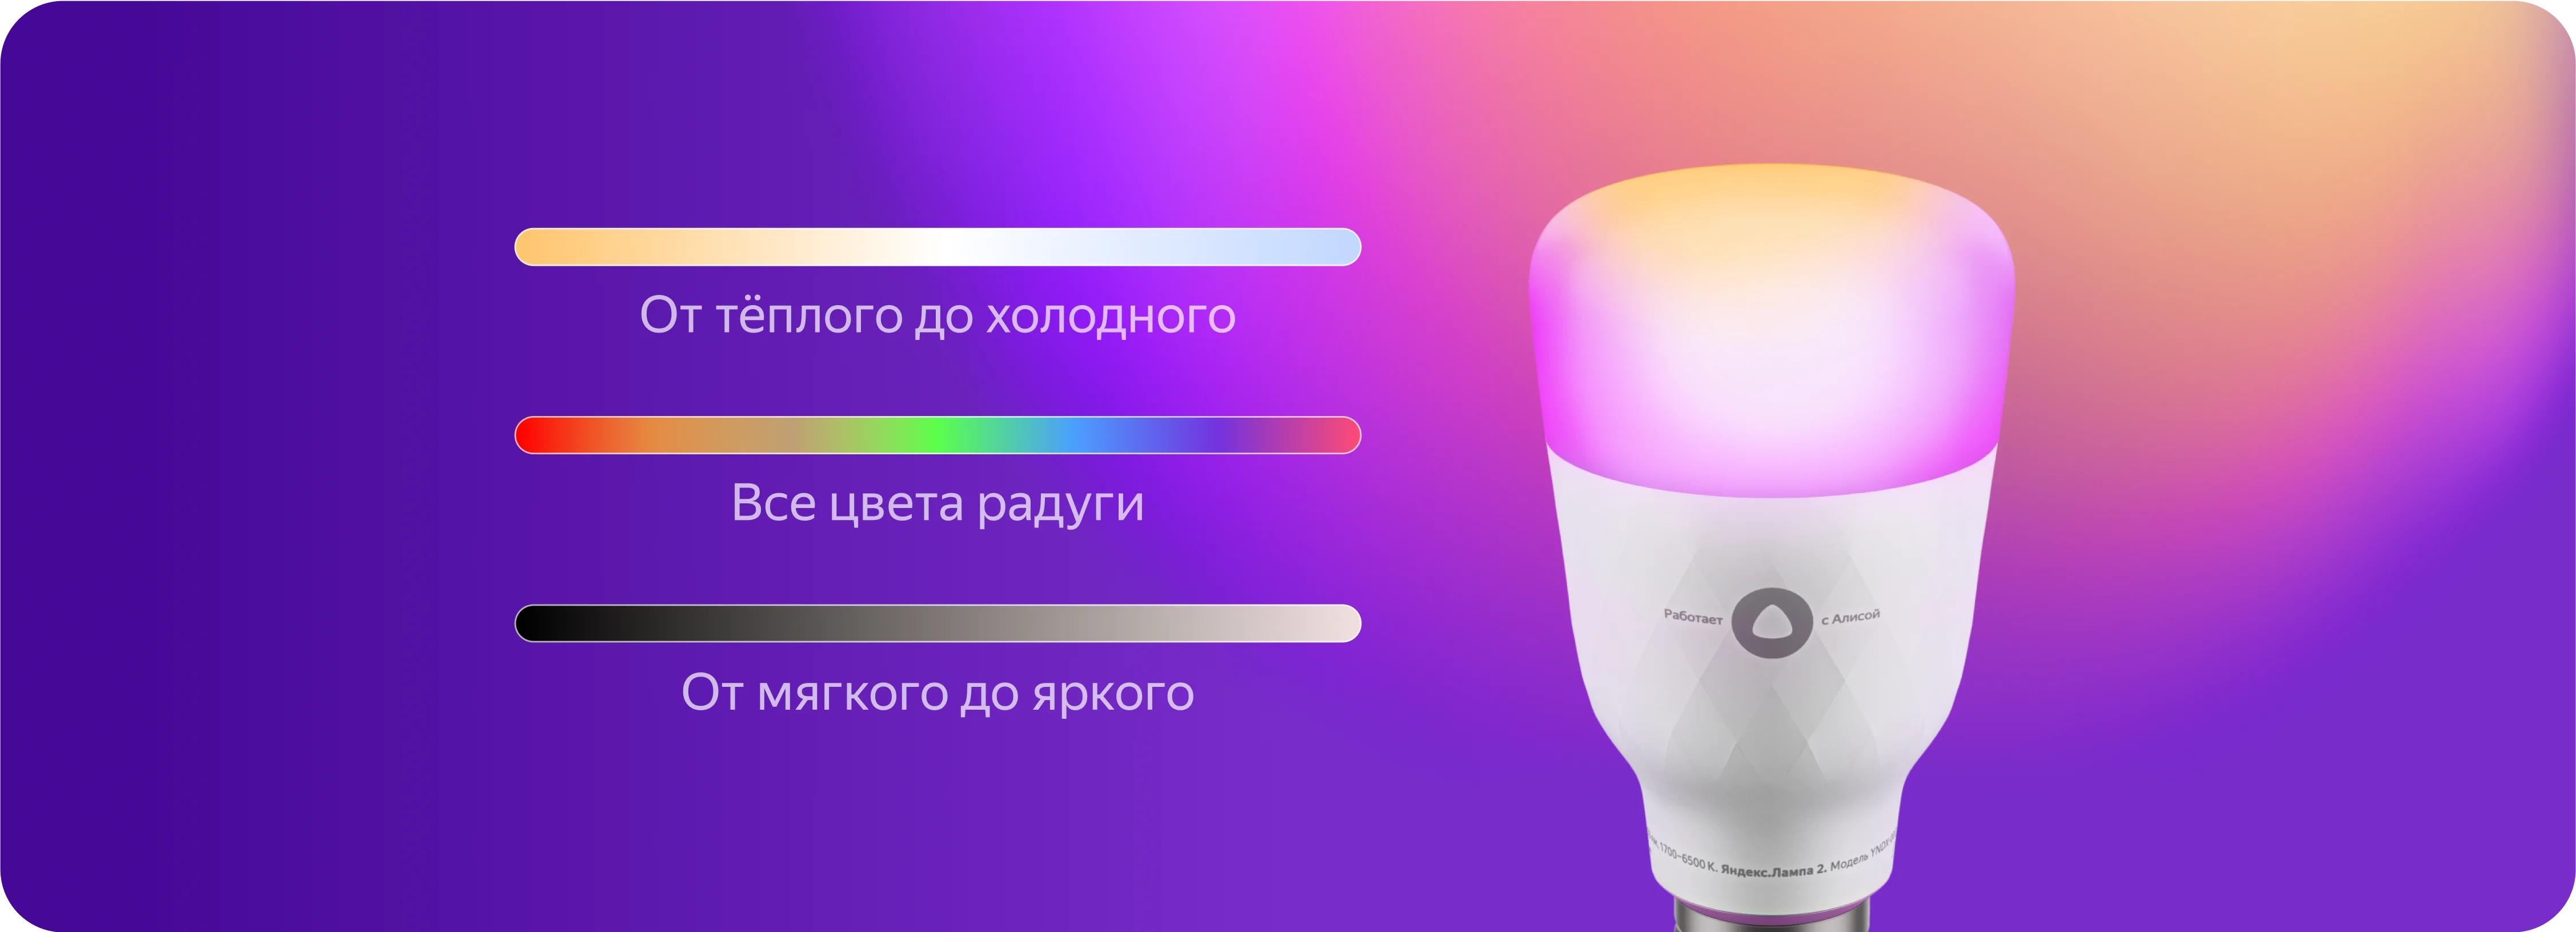 Как включить лампу с помощью голосового помощника. Умная лампочка Яндекса, 6500к, e27, 9вт. Умная лампочка YNDX 00010. Умная лампочка Яндекса, 6500к.